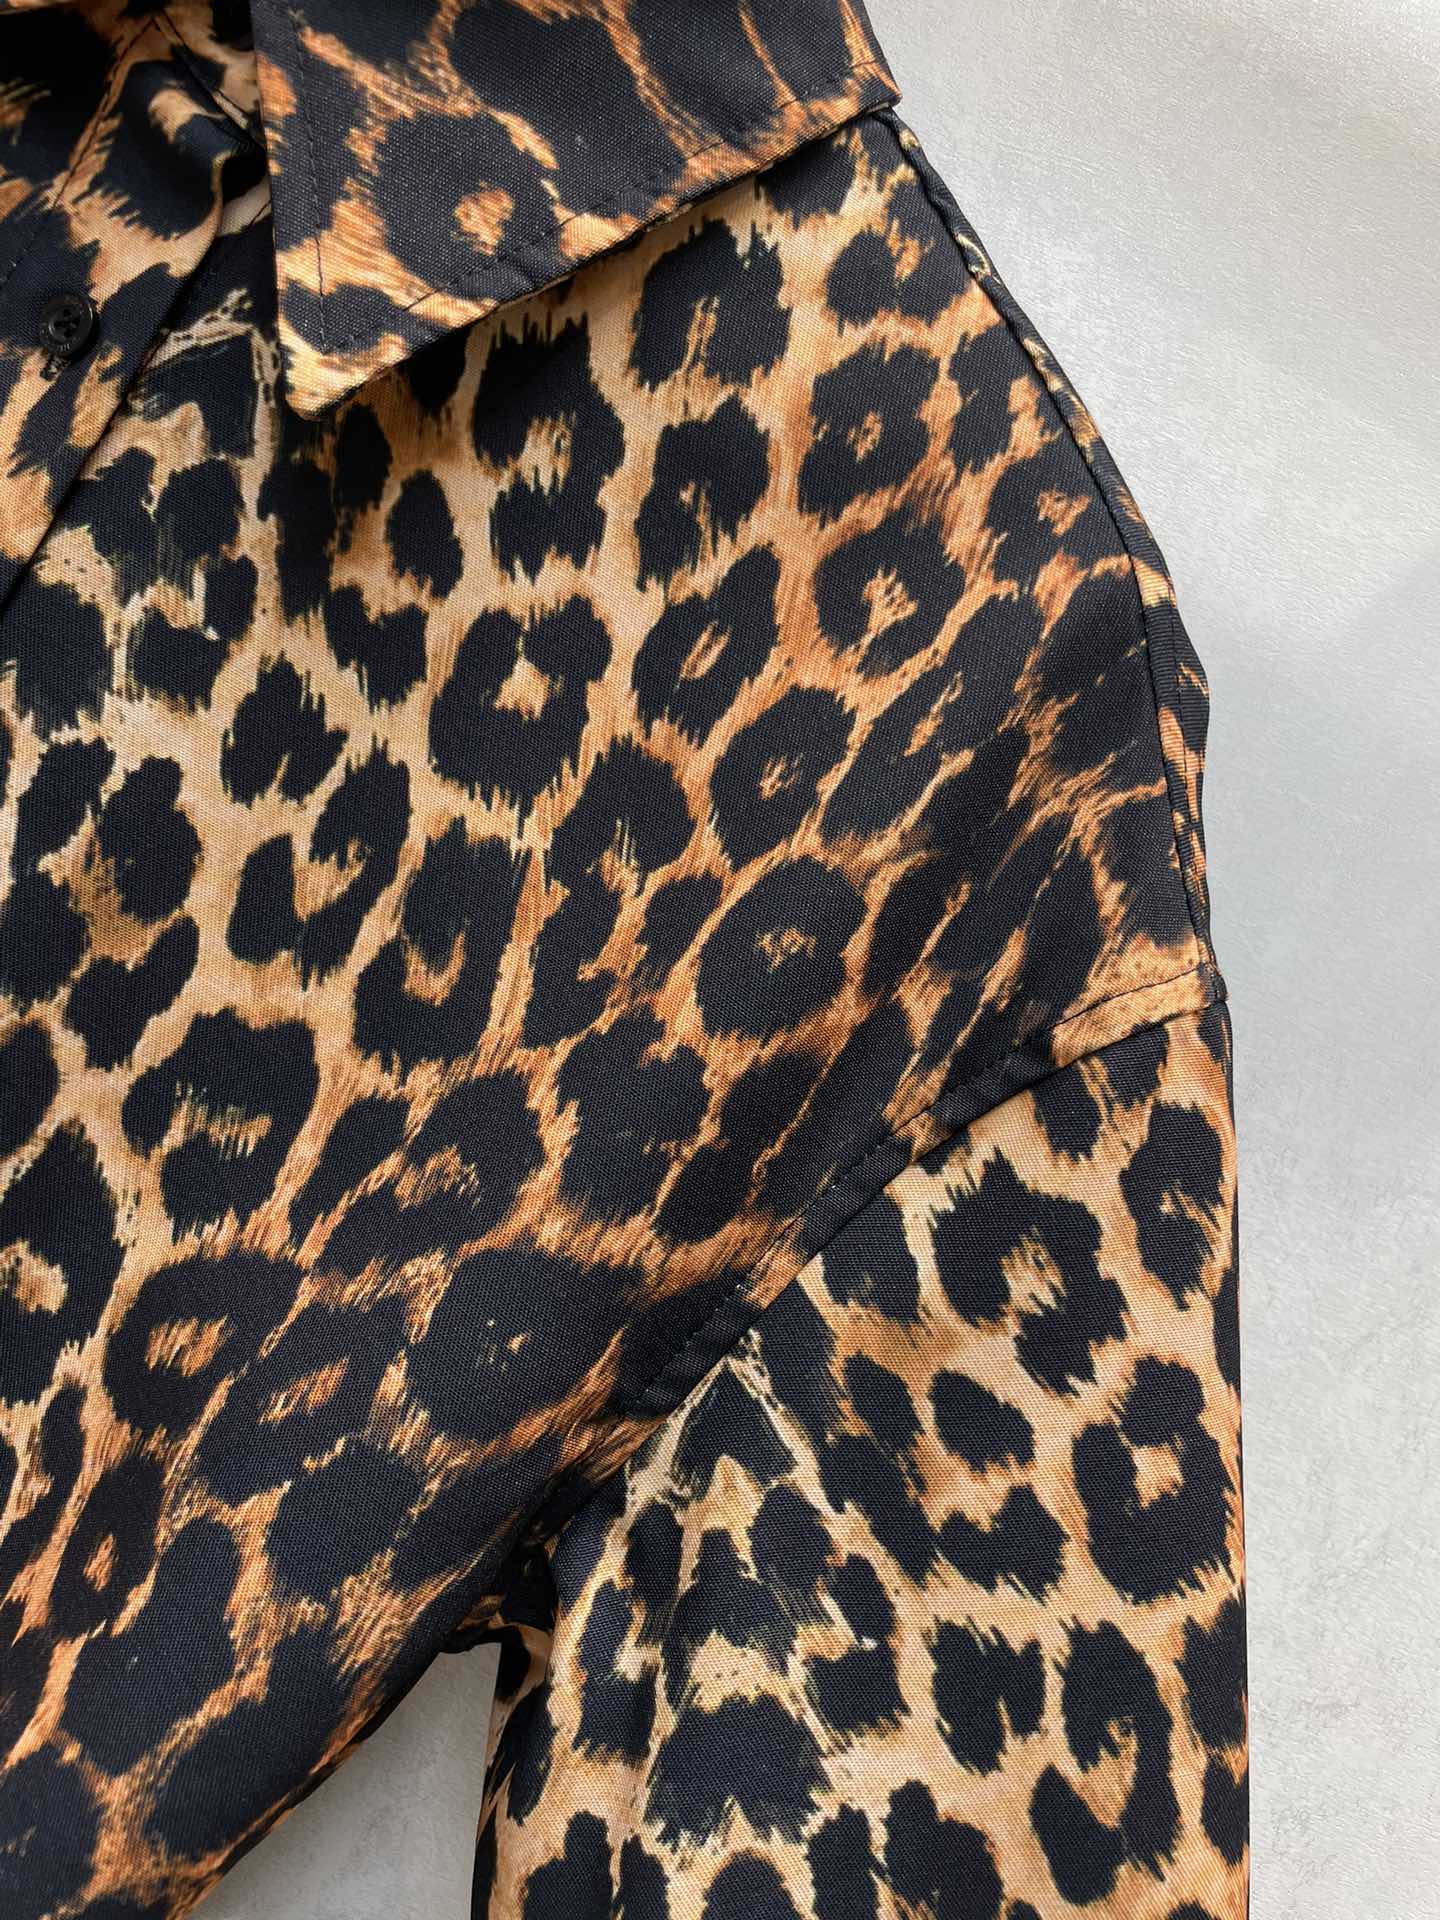 早春SLP家豹纹提花腰带衬衫男女同款系列自带气场的豹纹大衬衫用来当外套也超好看廓形的版型设计上身藏肉又利